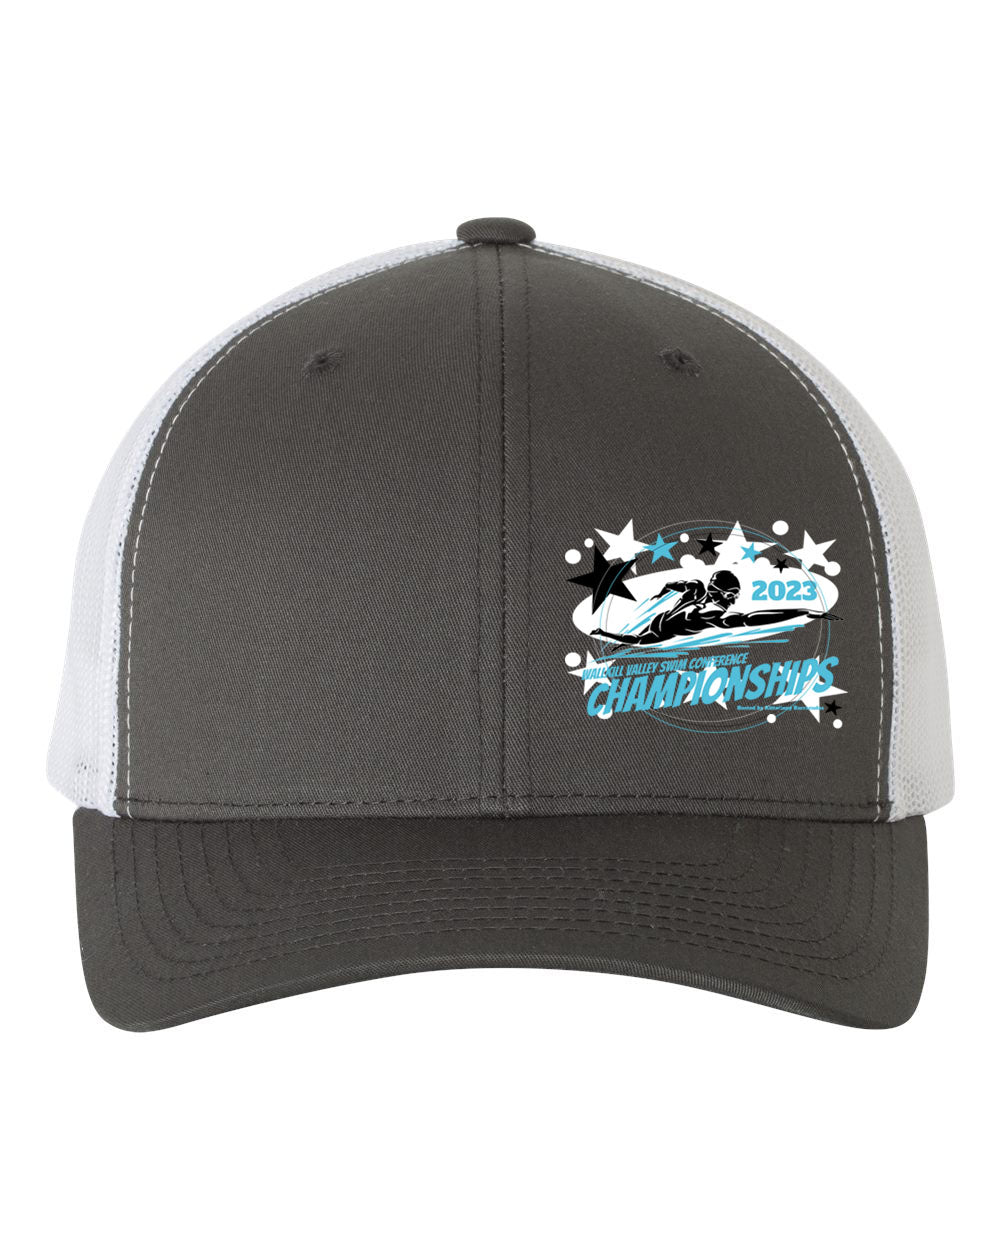 Barracudas Trucker Hat